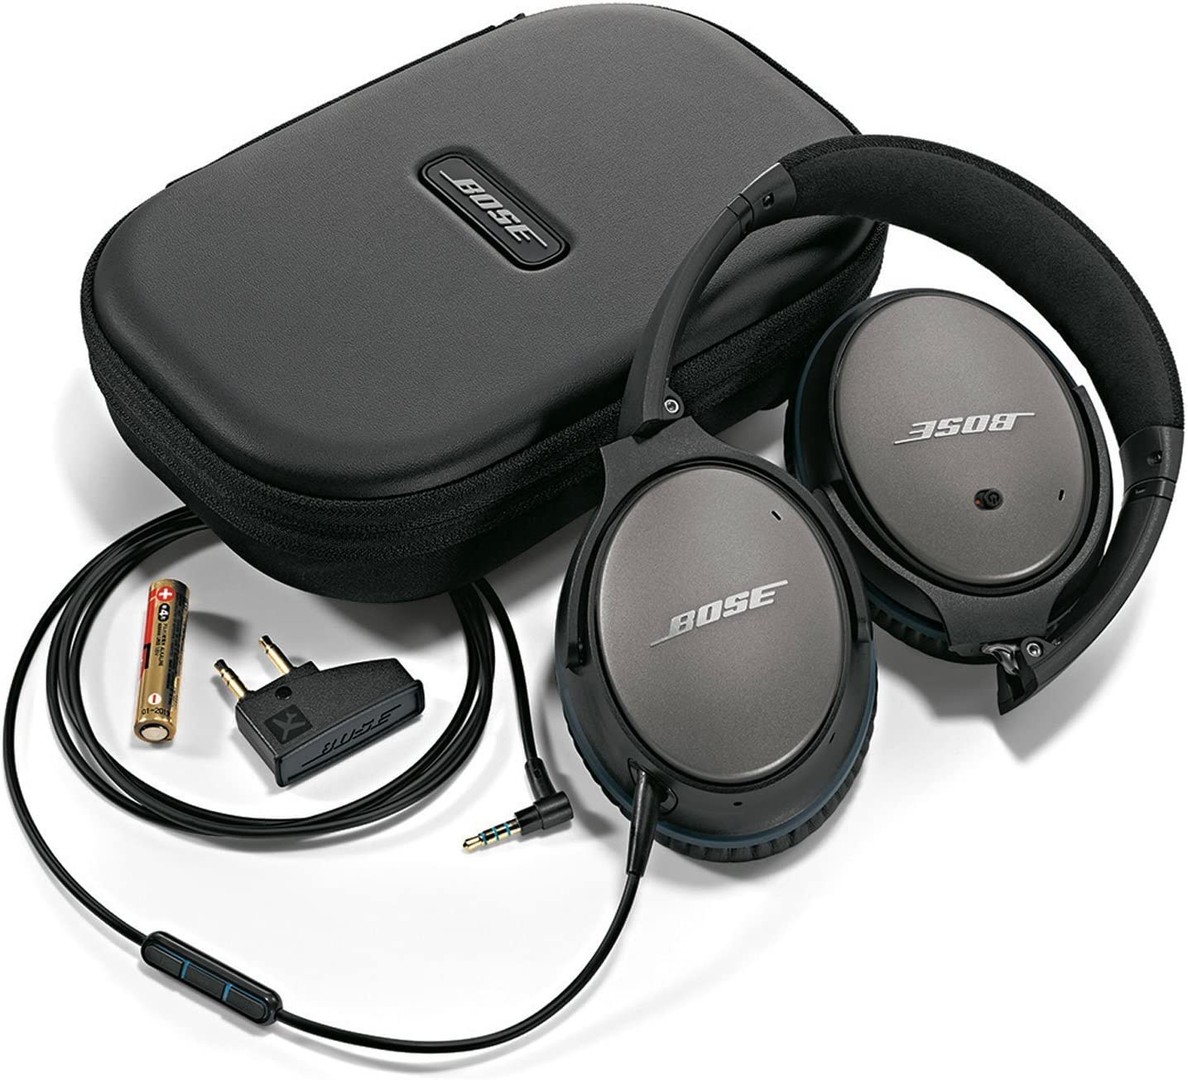 camaras y audio - audifonos bose quietcomfort 25 auriculares con cable (3.5) dispositivos apple 10 0